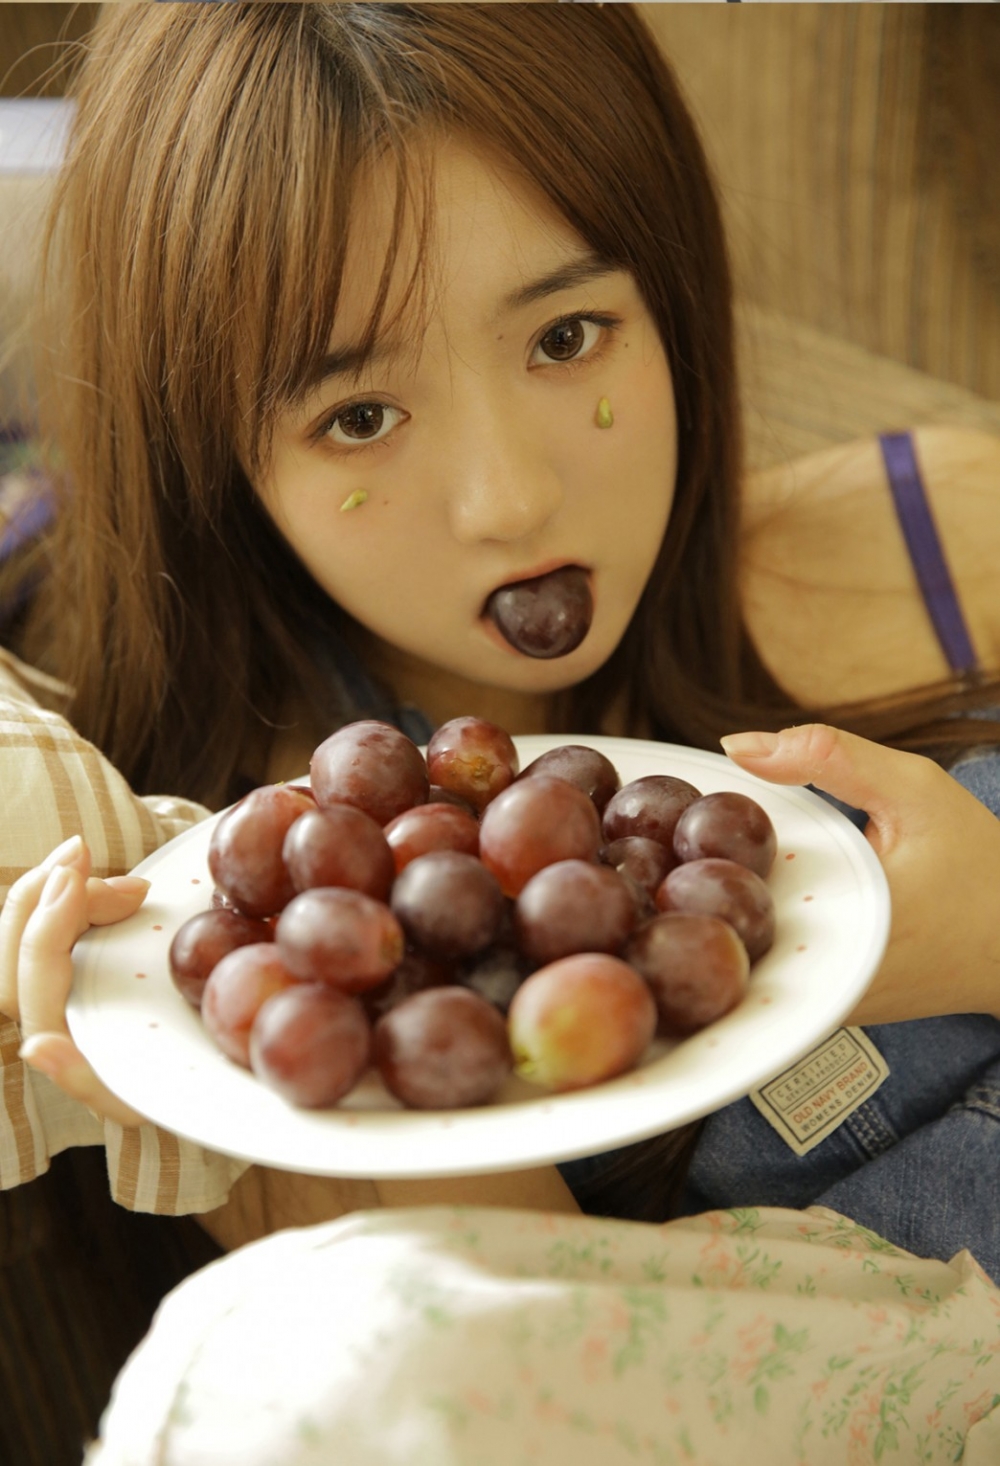 吃葡萄的美少女萝莉诱人风骚挑逗性感居家写真